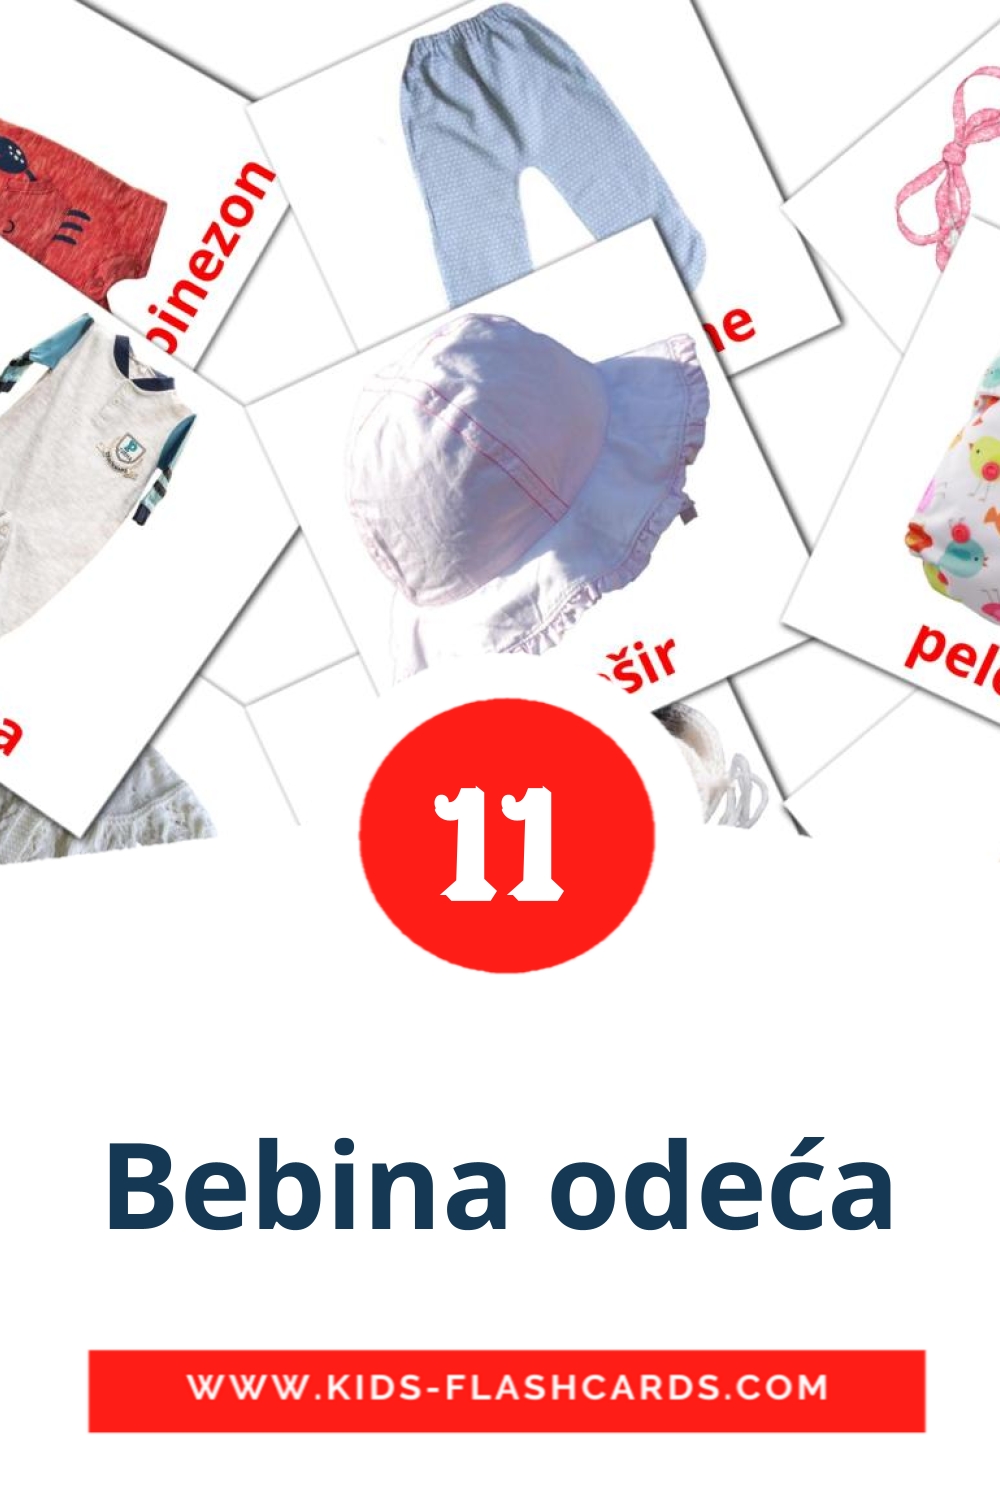 12 Bebina odeća Picture Cards for Kindergarden in serbian